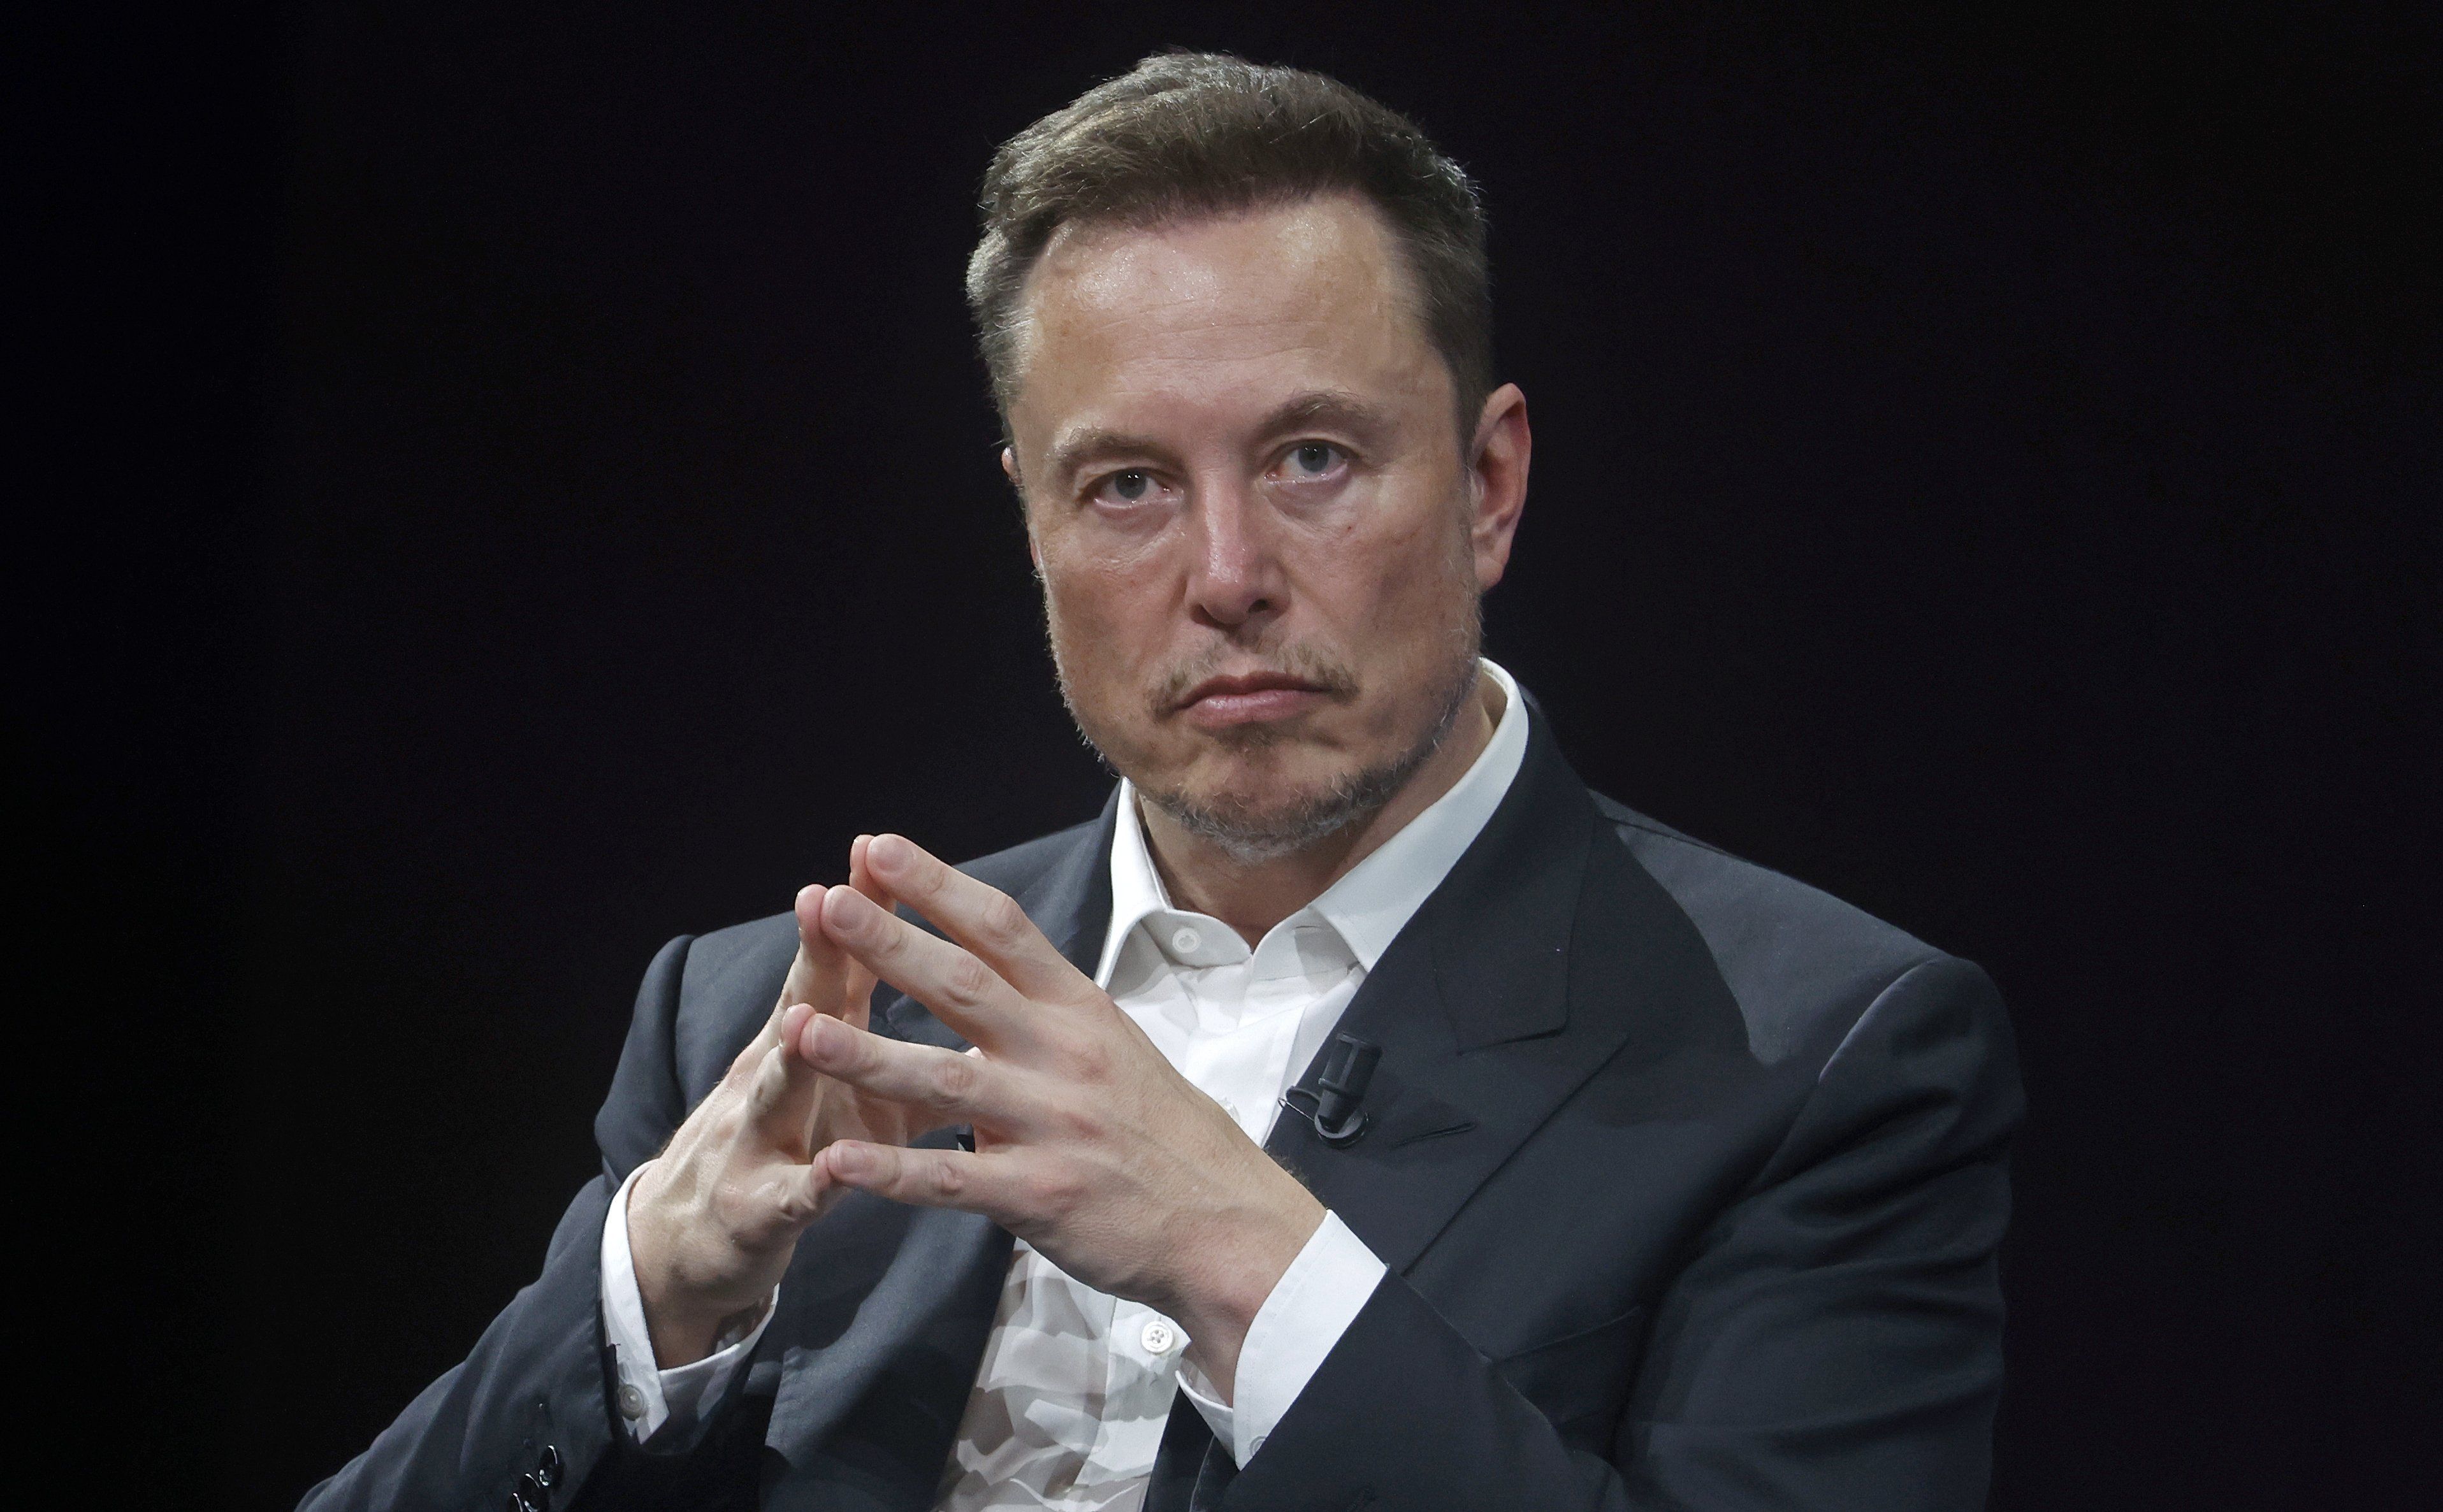 
Elon Musk Says 'Cis' & 'Cisgender' Are Slurs
